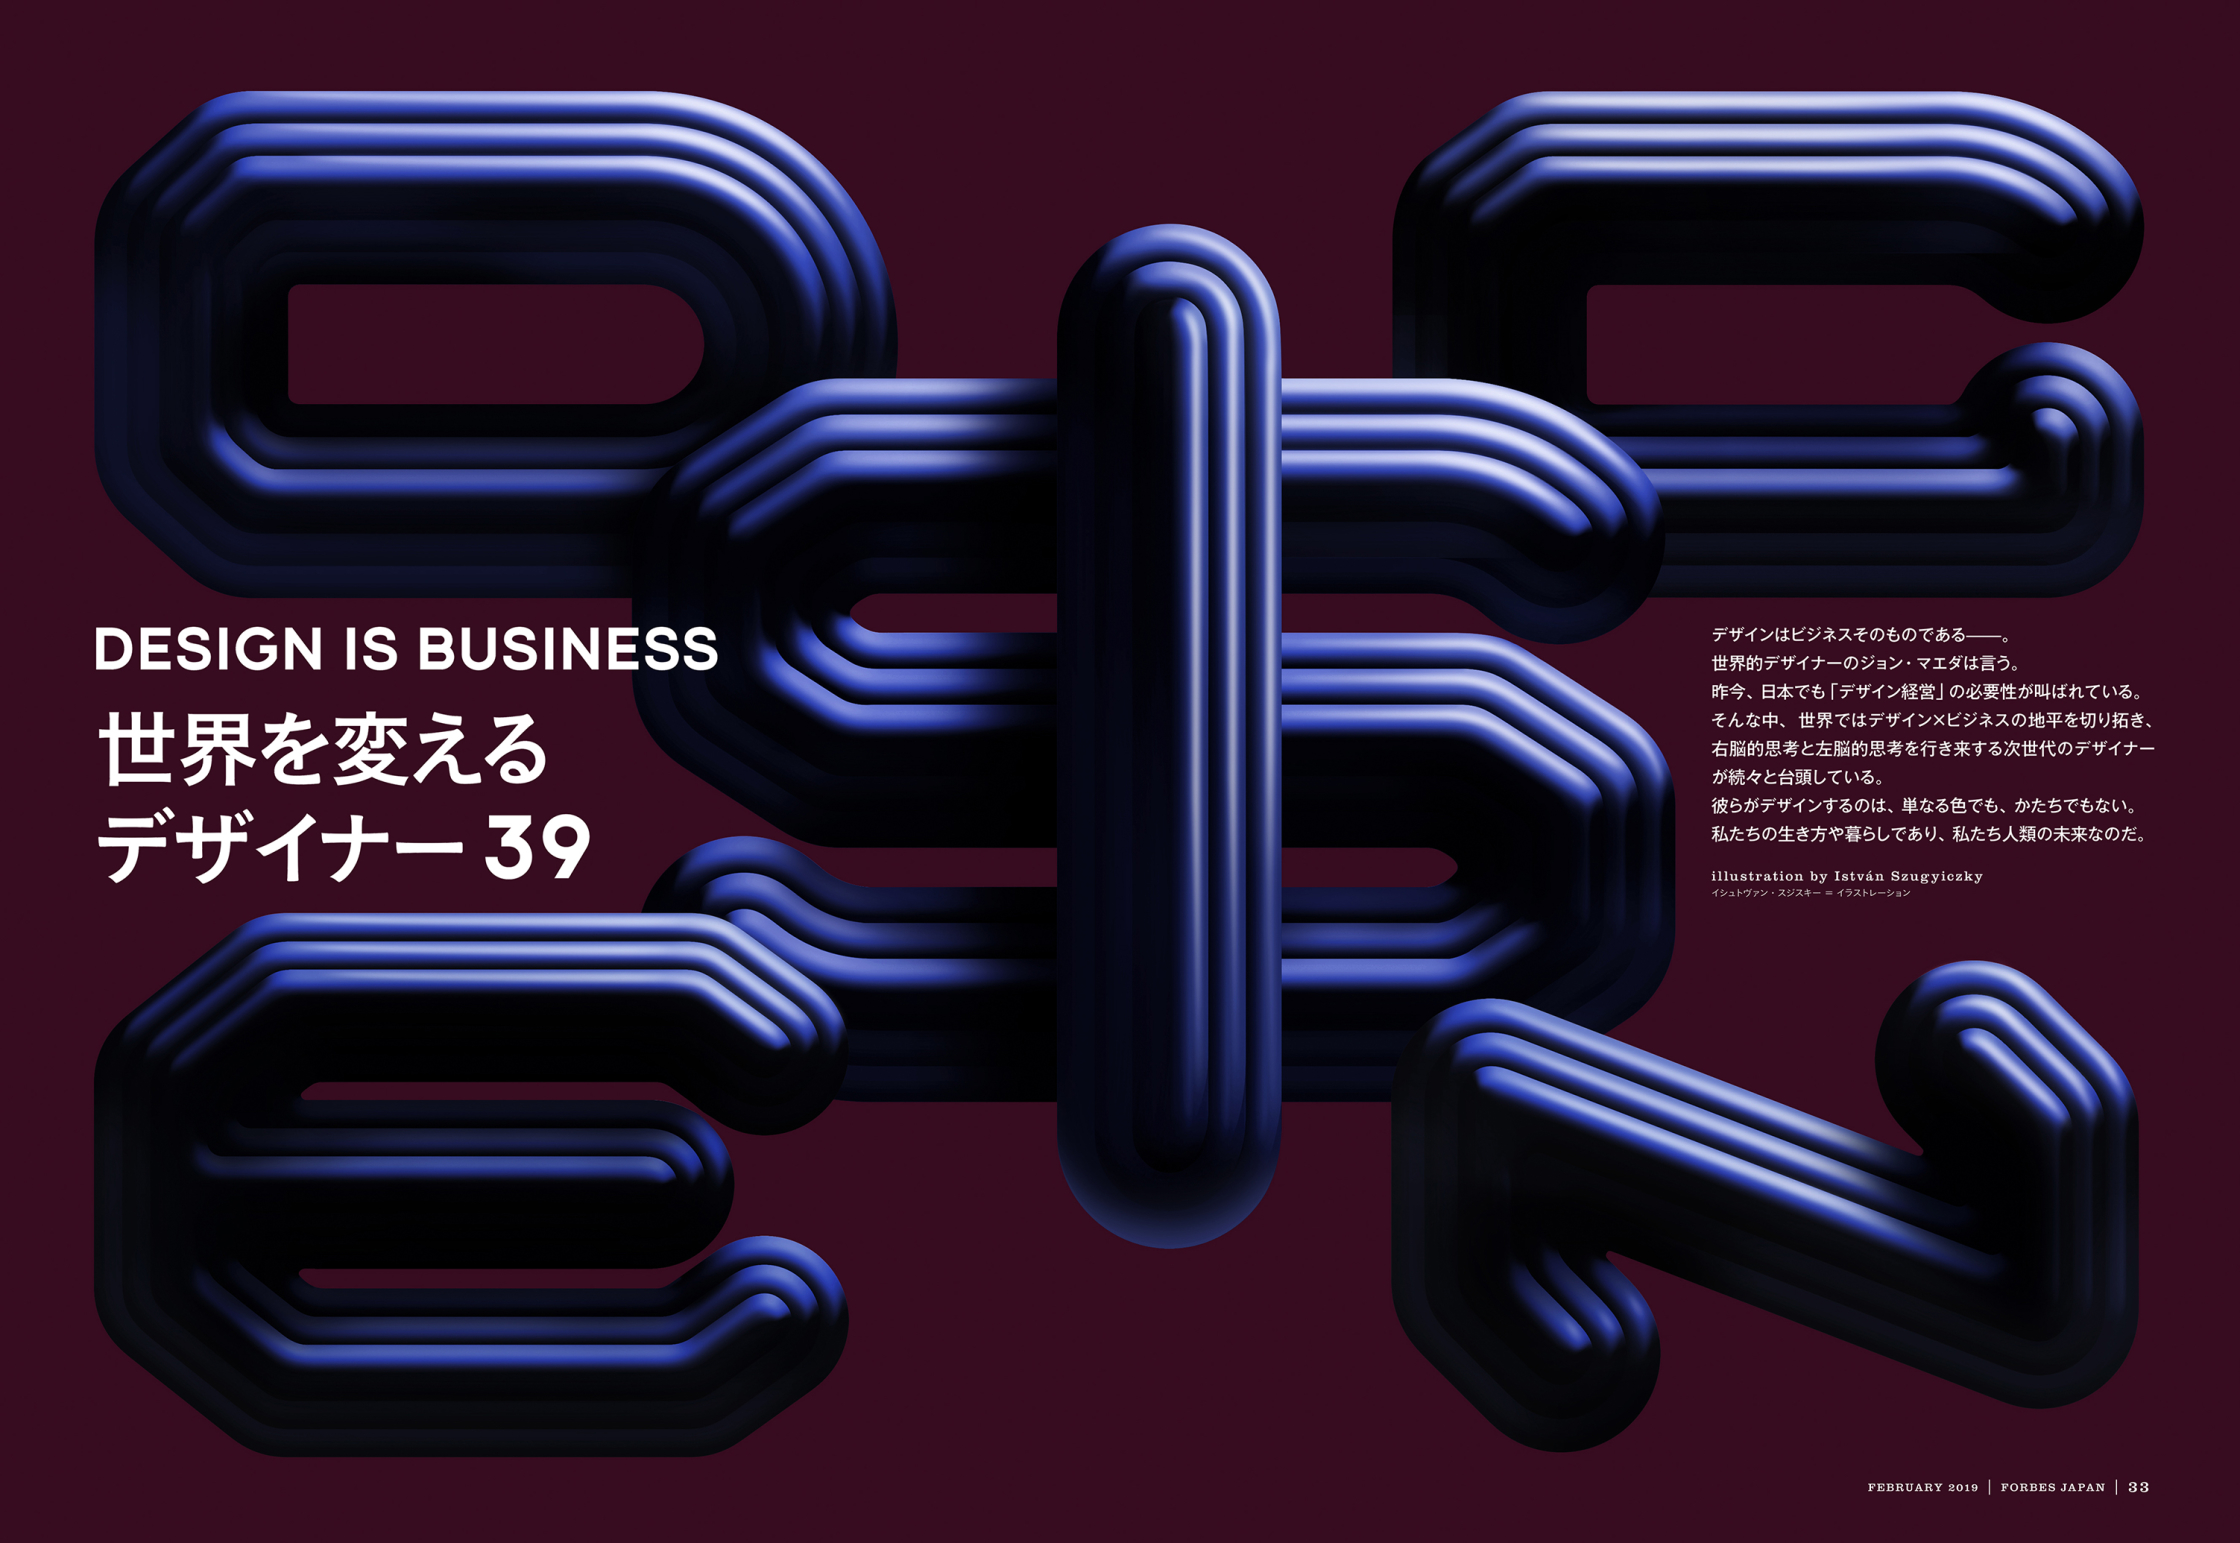 Desing_Is_Business_Forbes_Japan_RGB.jpg